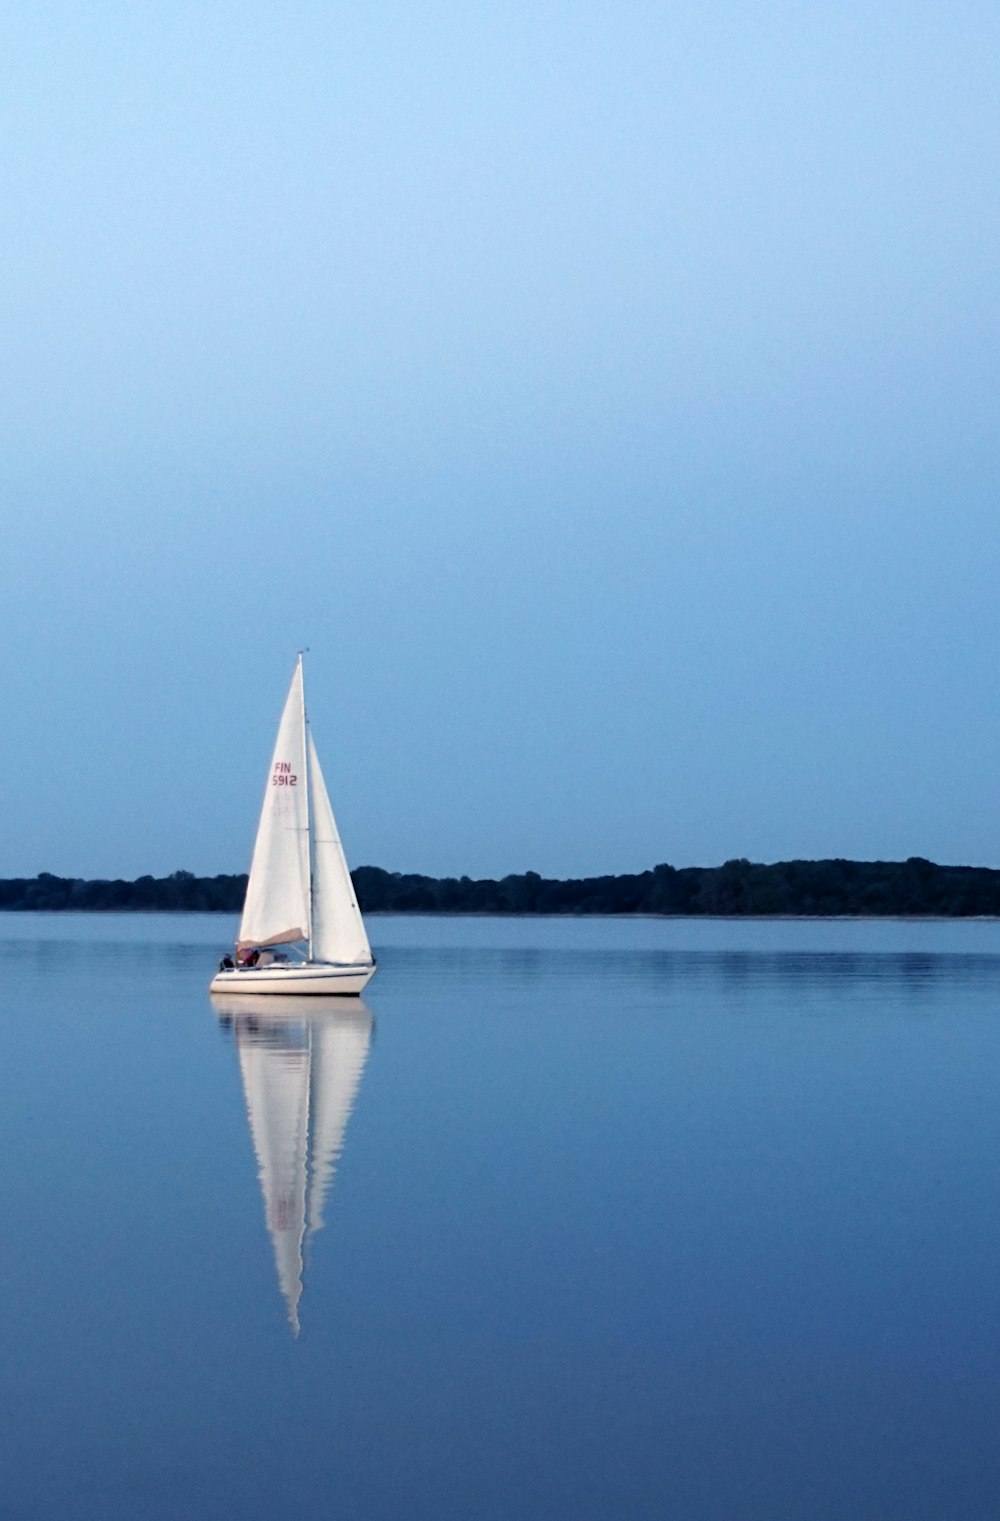 Un velero navega en un lago tranquilo